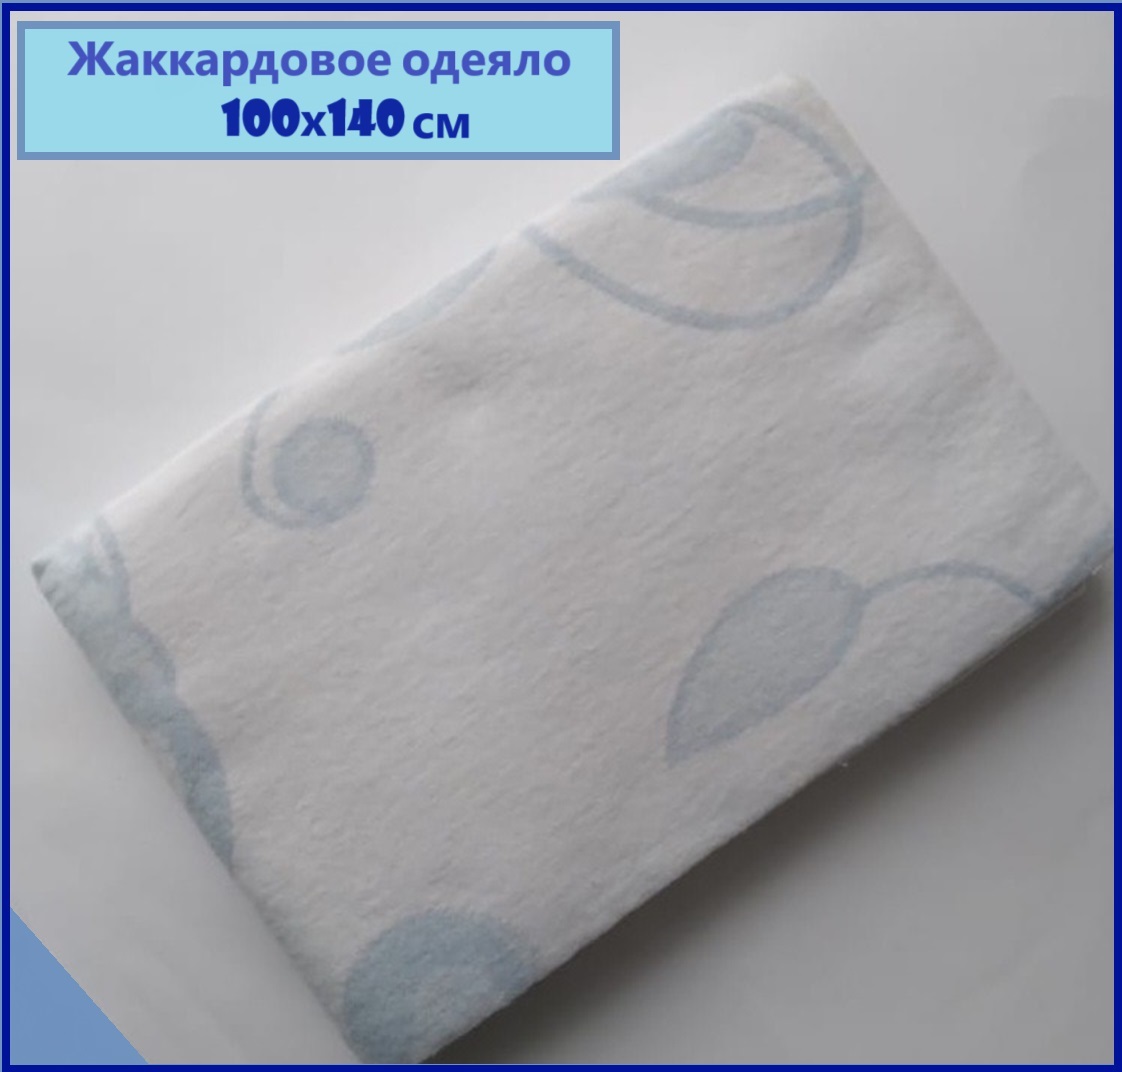 Жаккардовое детское одеяло Униратов Текс белый-голубой хлопок размер 100х140 одеяло umbo детское муслиновое двустороннее с застёжками 120х90 см 4 слоя